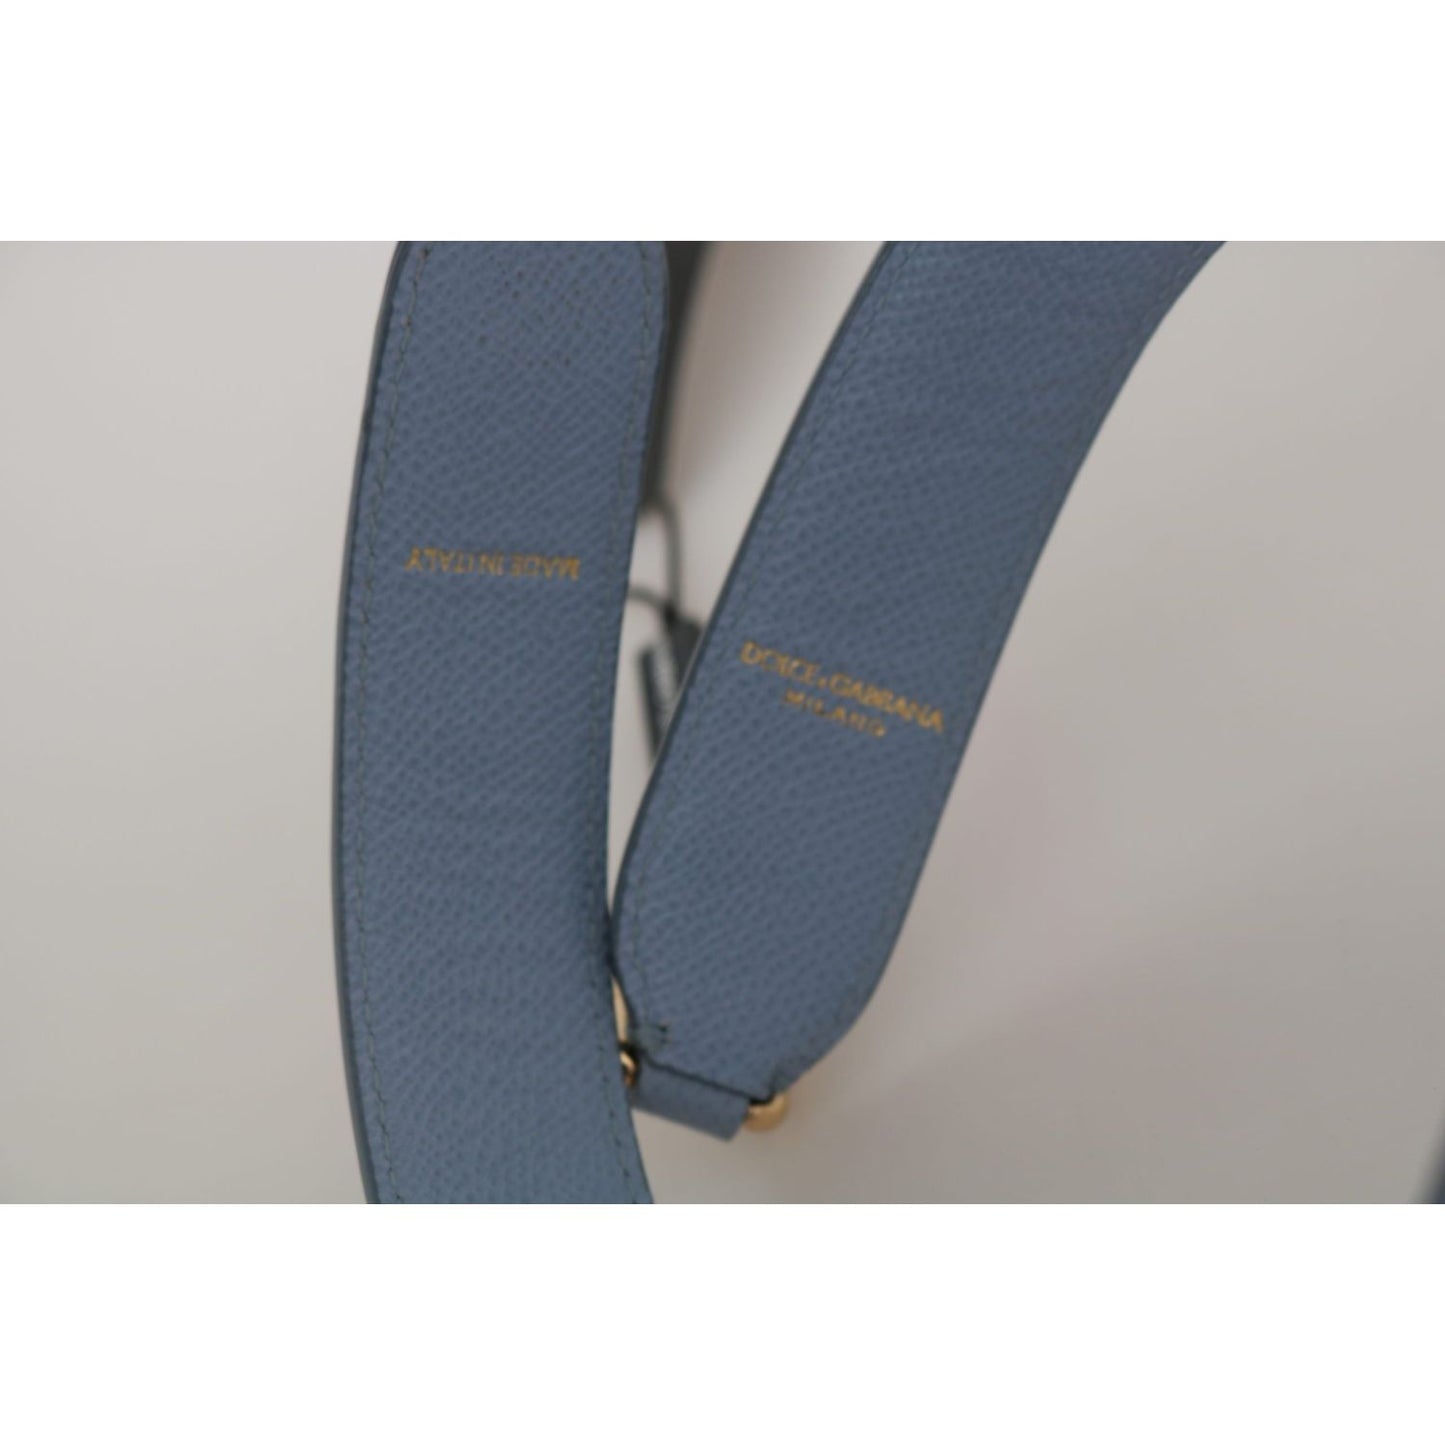 Dolce & Gabbana Elegant Blue Leather Shoulder Strap blue-leather-handbag-accessory-shoulder-strap